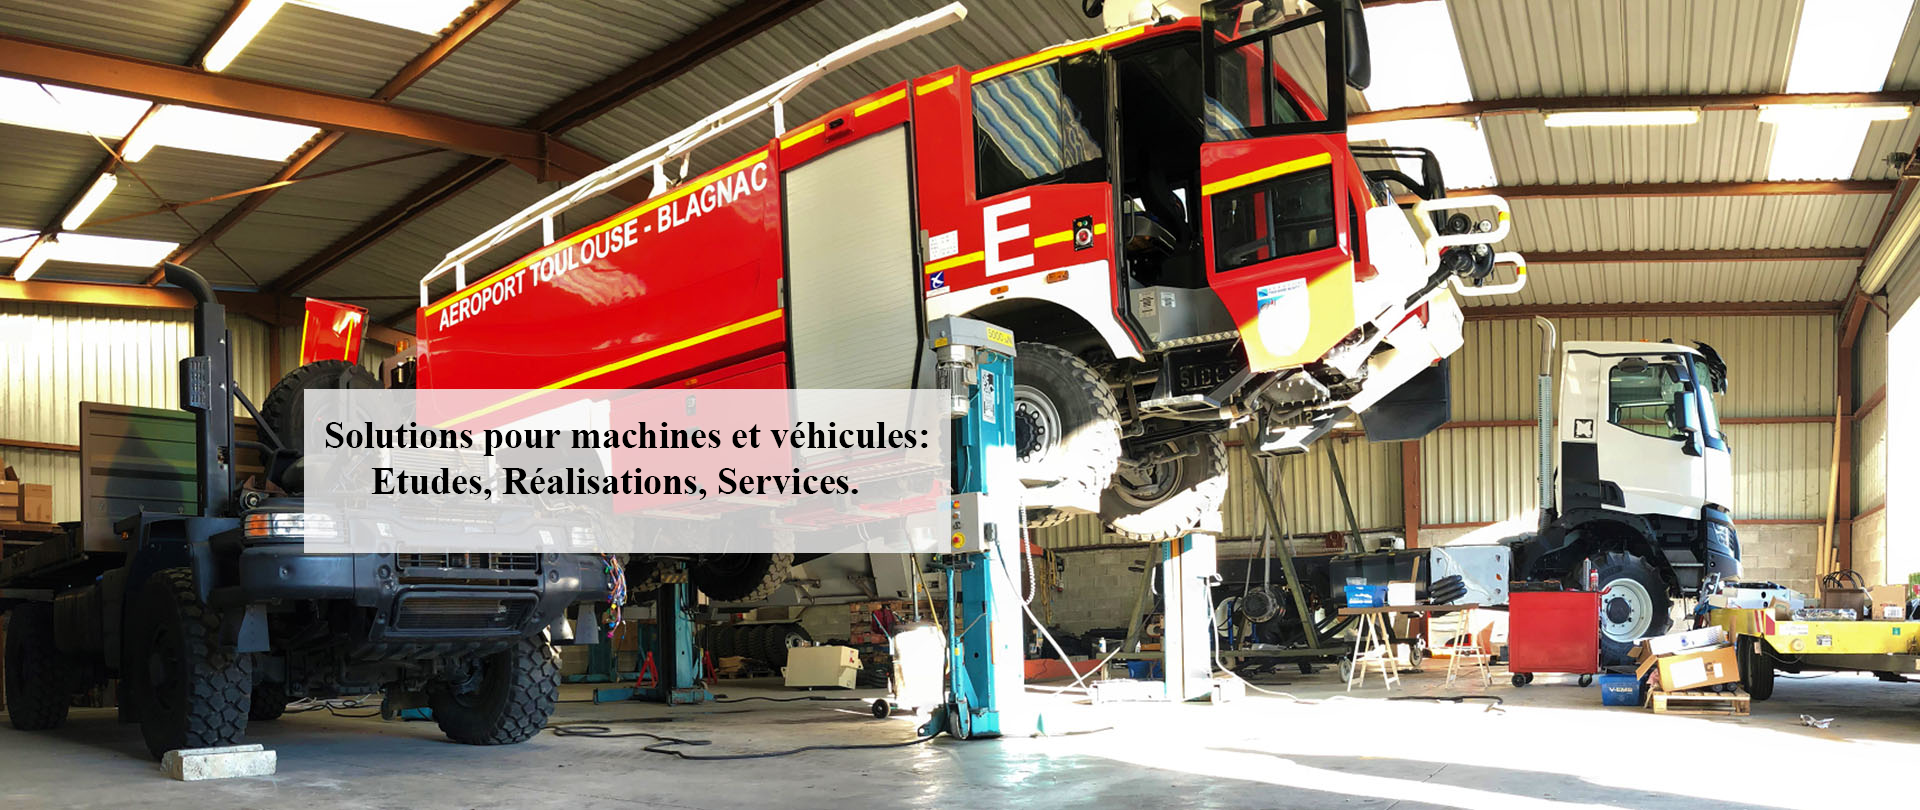 Solutions pour machines et véhicules: Etudes, Réalisations, Services.